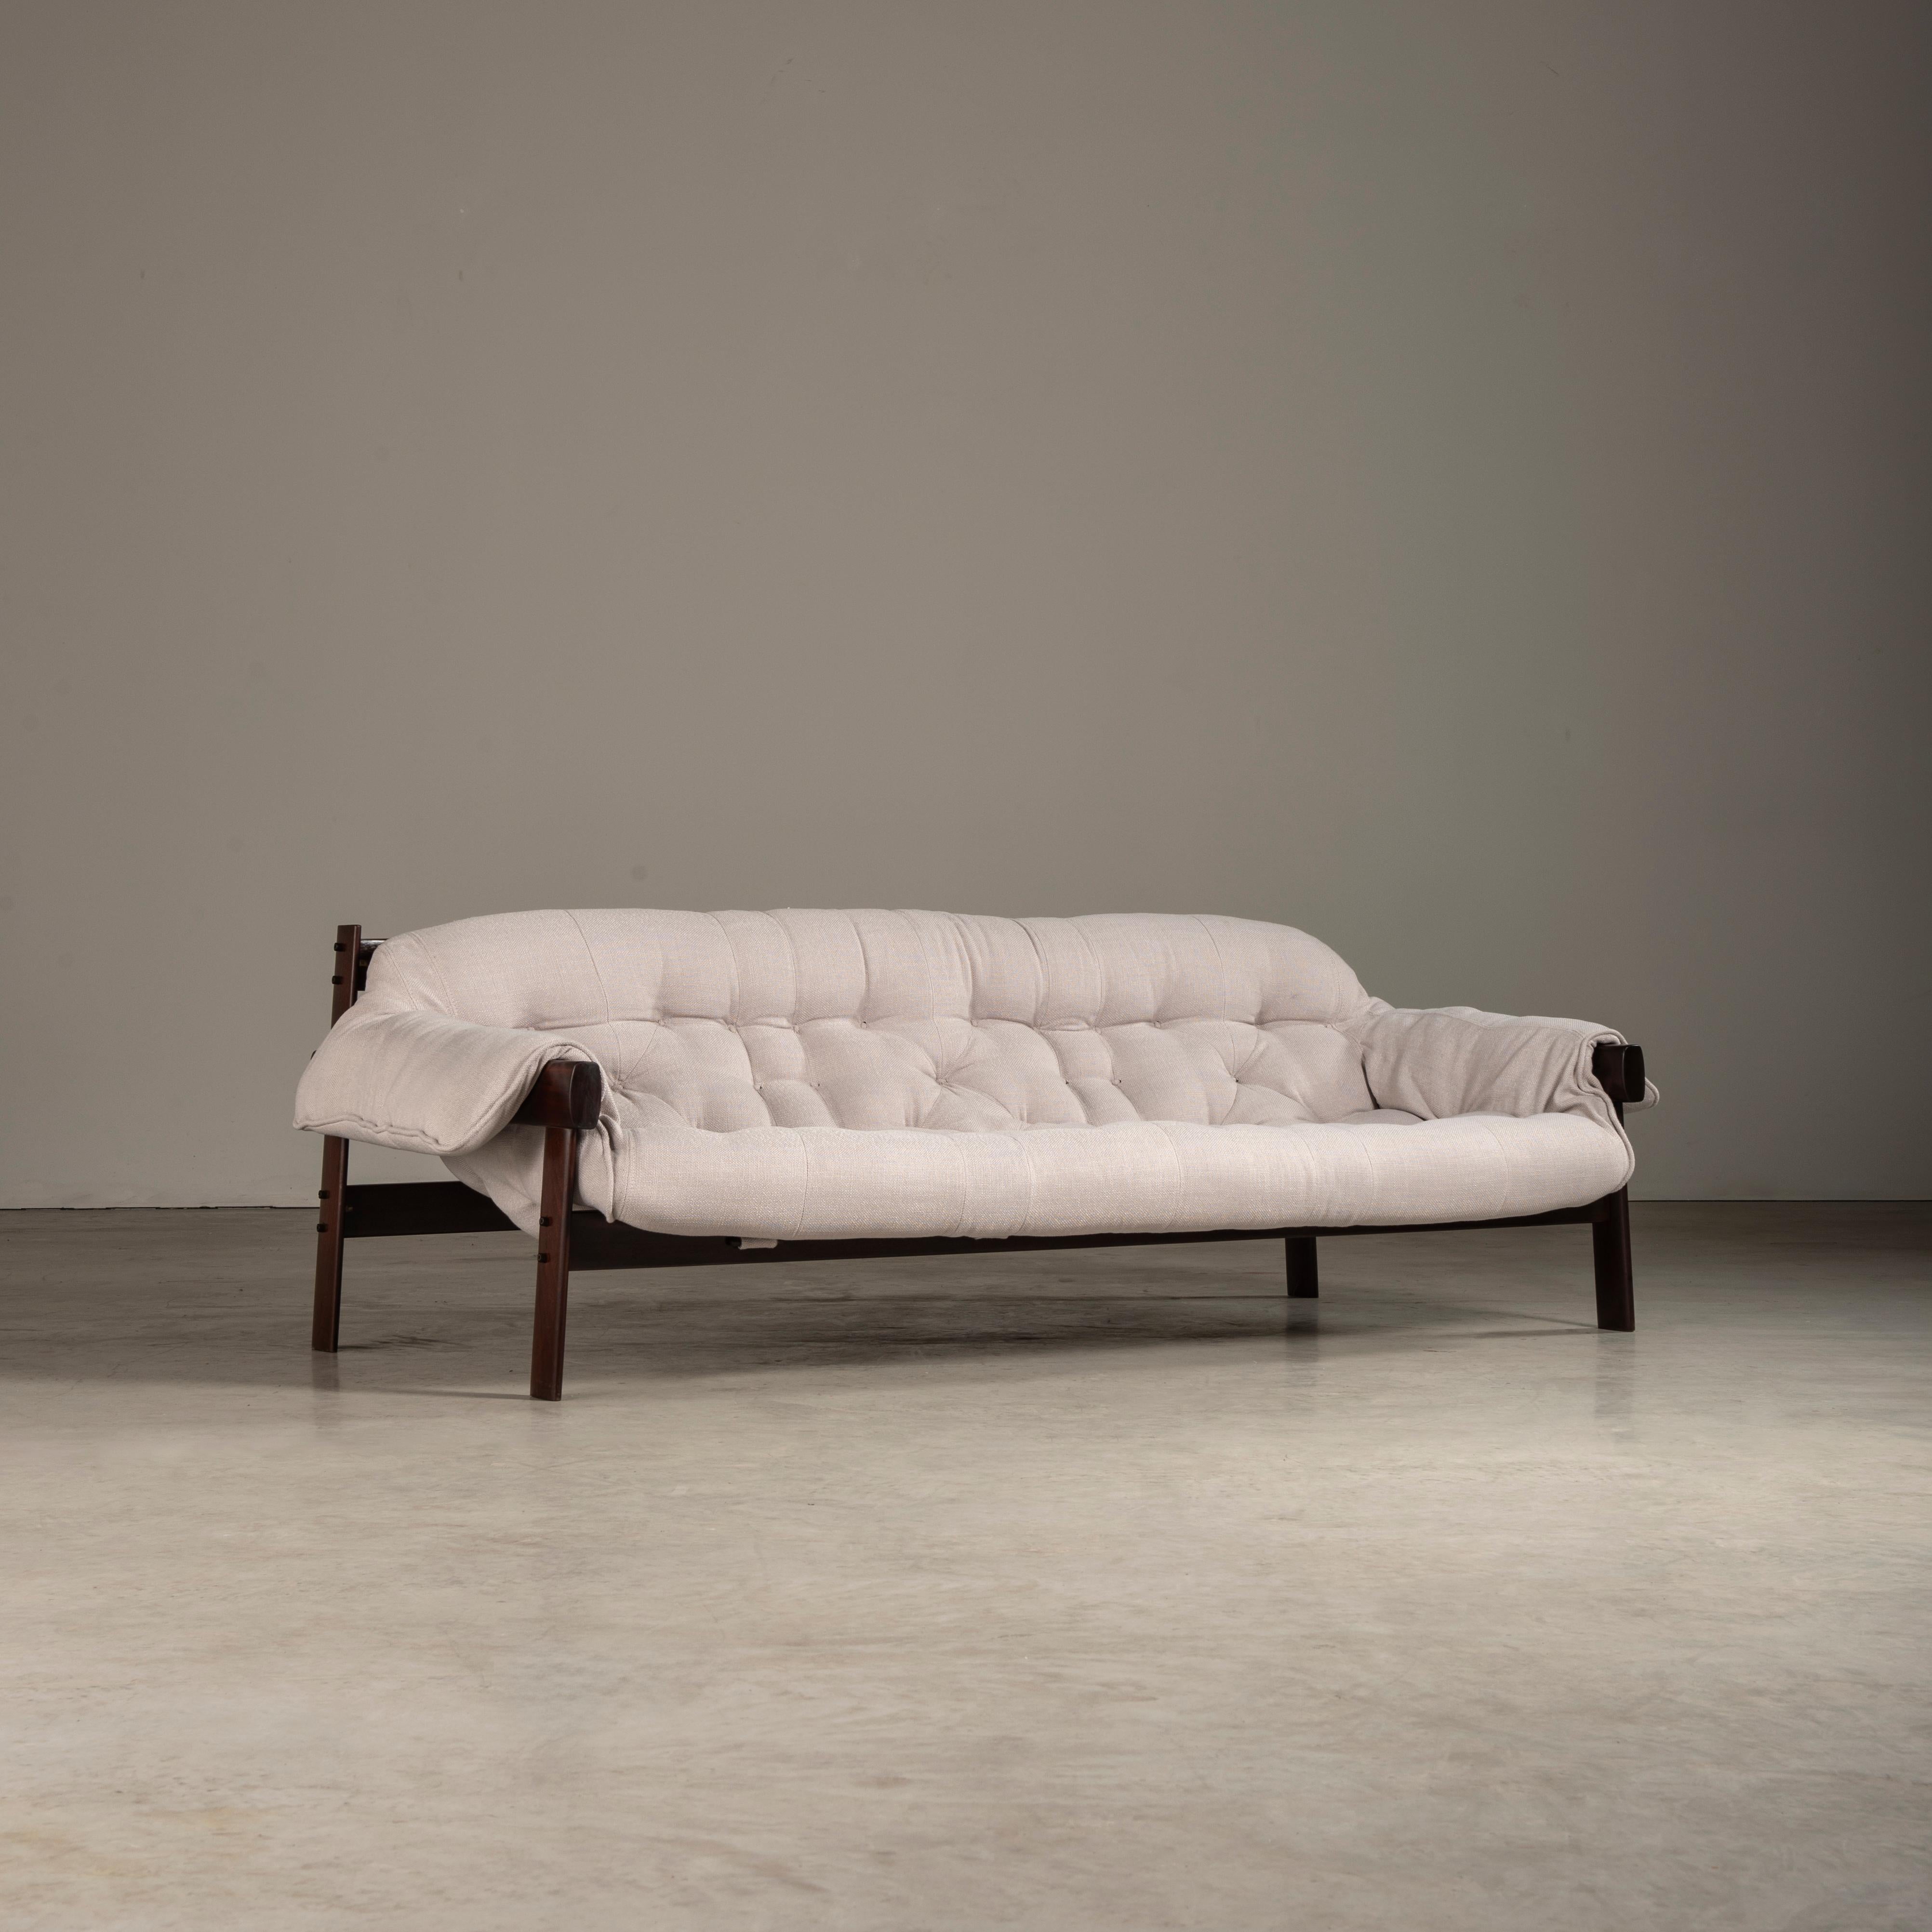 Le canapé MP-41, quintessence du célèbre designer Percival Lafer, est un coup de maître du design brésilien du milieu du siècle. Lafer, largement célébré pour son style novateur et distinctif, a une fois de plus manifesté son génie dans cette pièce